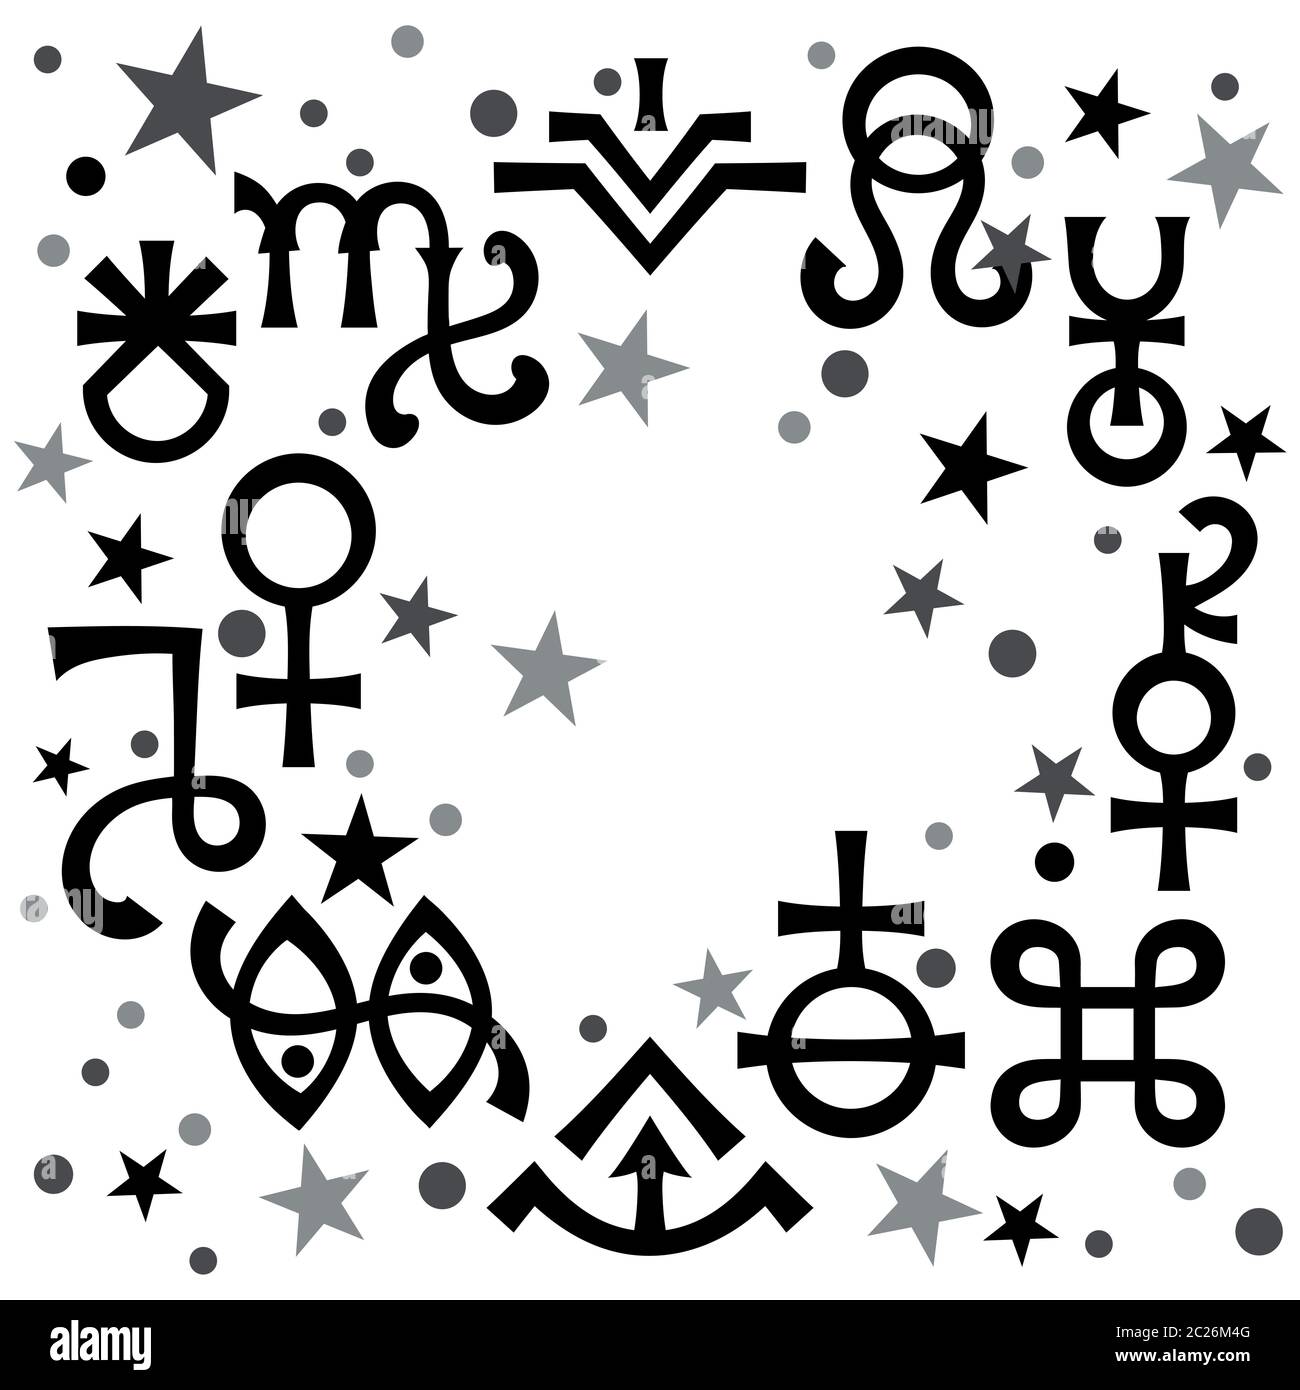 Diadème astrologique (signes astrologiques et symboles mystiques occultes), fond de motif céleste noir et blanc avec étoiles. Banque D'Images